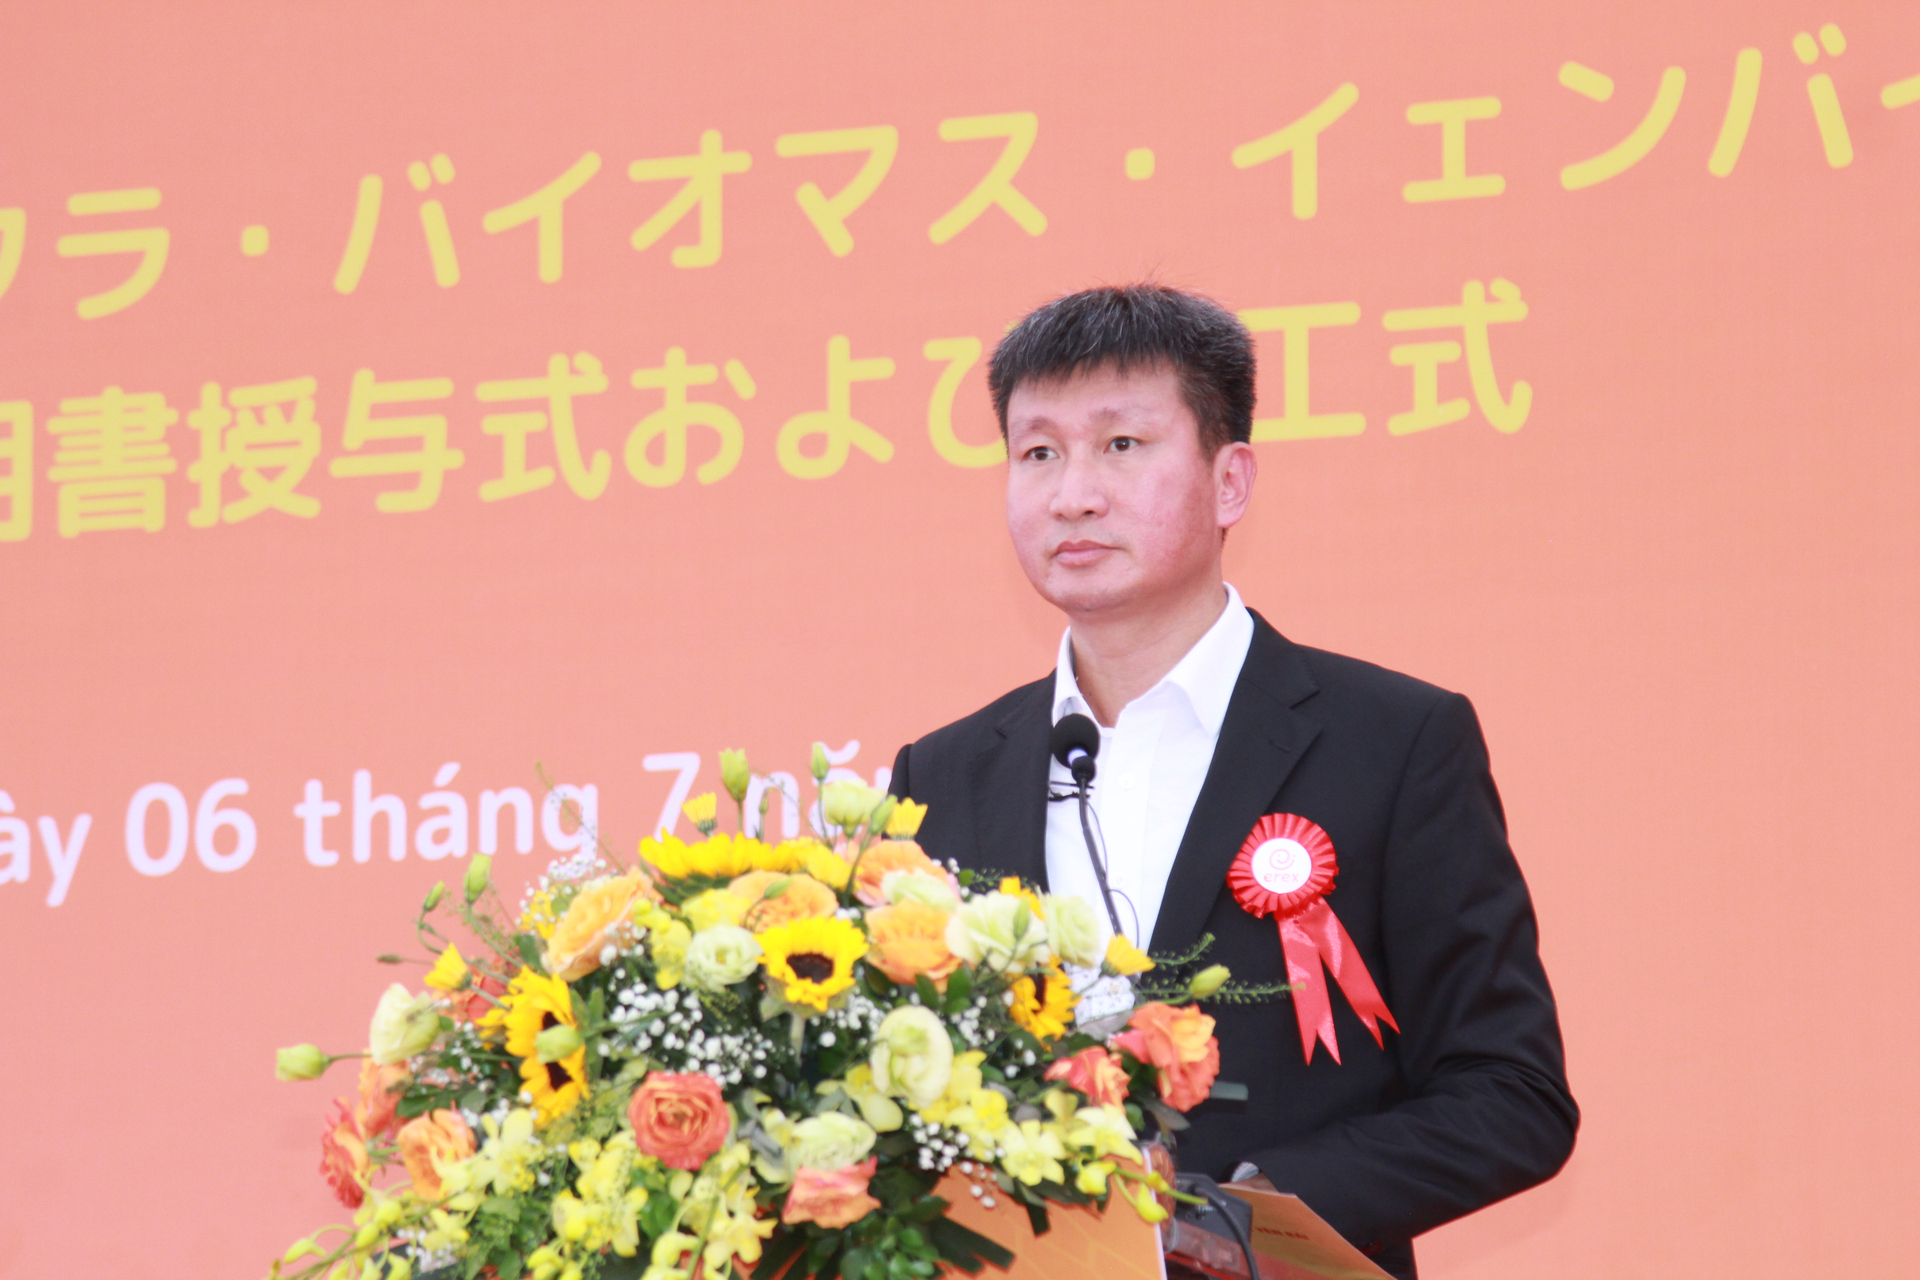 Ông Trần Huy Tuấn - Chủ tịch UBND tỉnh Yên Bái phát biểu tại buổi lễ. Ảnh: Thanh Tiến.